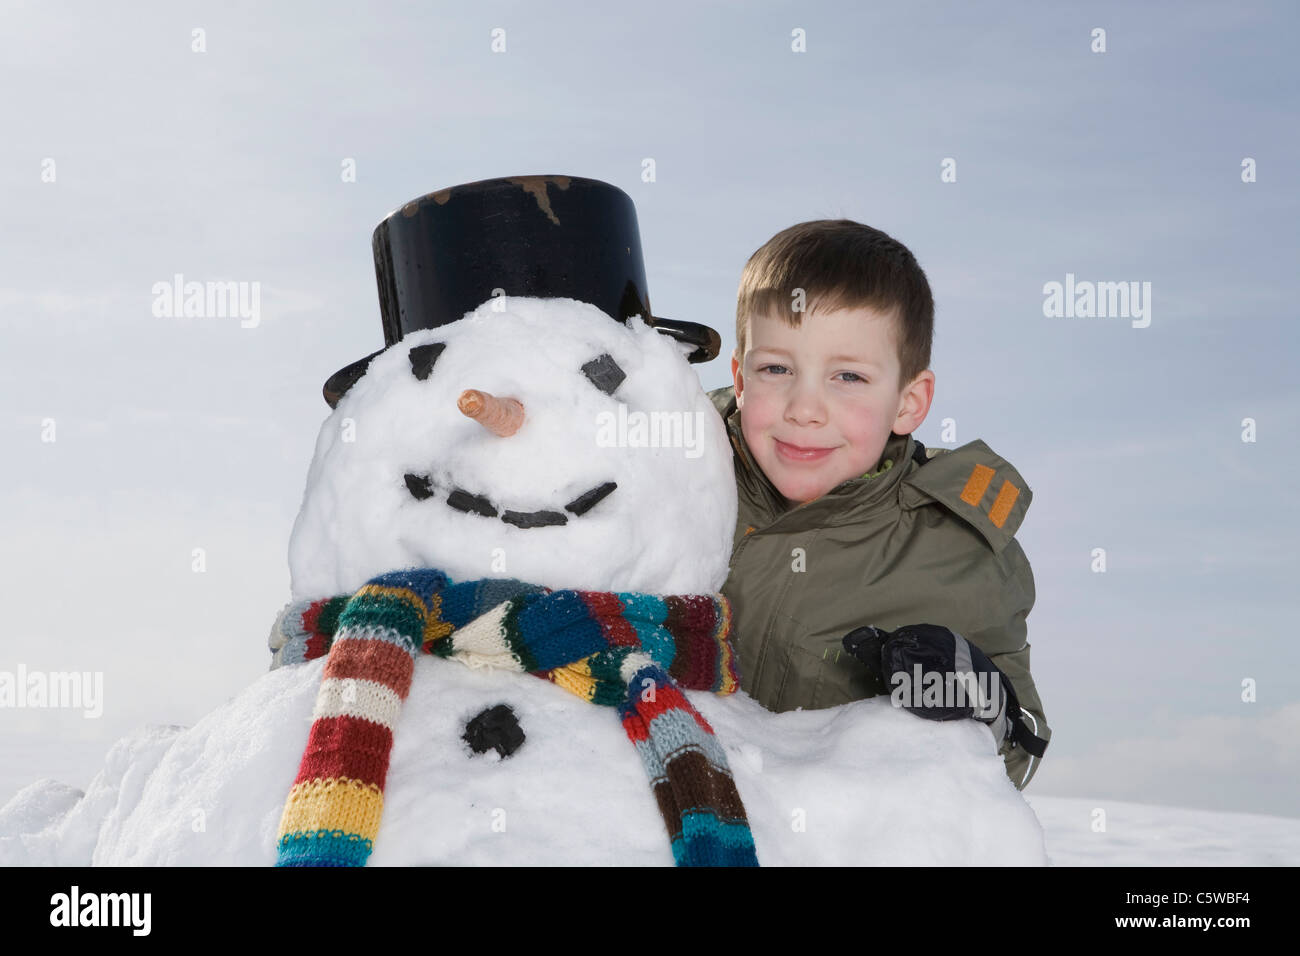 Alemania, Baviera, Munich, Boy (8-9) de pie junto al muñeco de nieve, Retrato Foto de stock